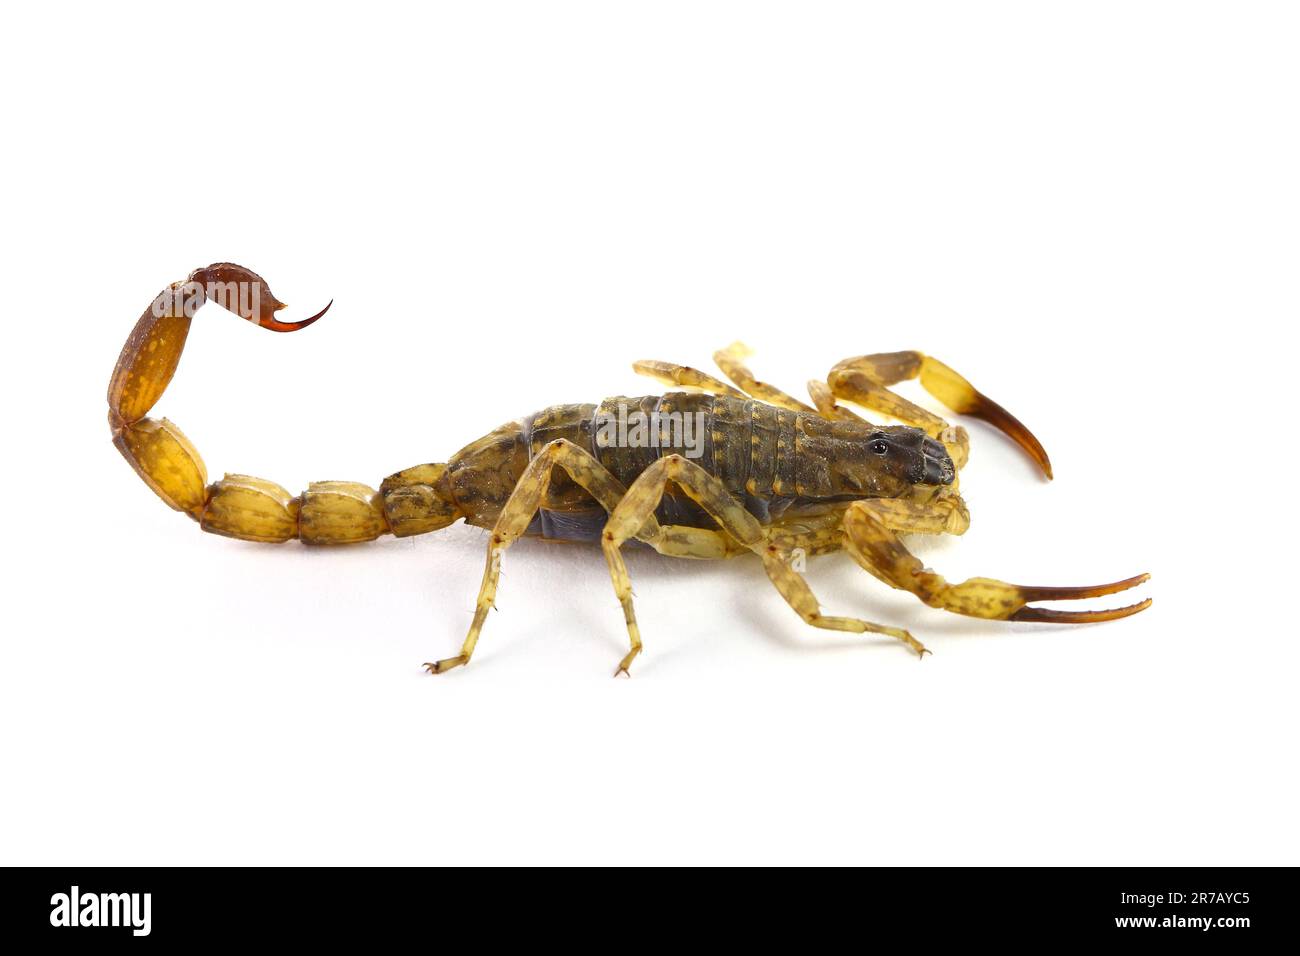 Escorpión chino de corteza rayada / escorpión marrón vietnamita (Lychas mucronatus) sobre fondo blanco Foto de stock